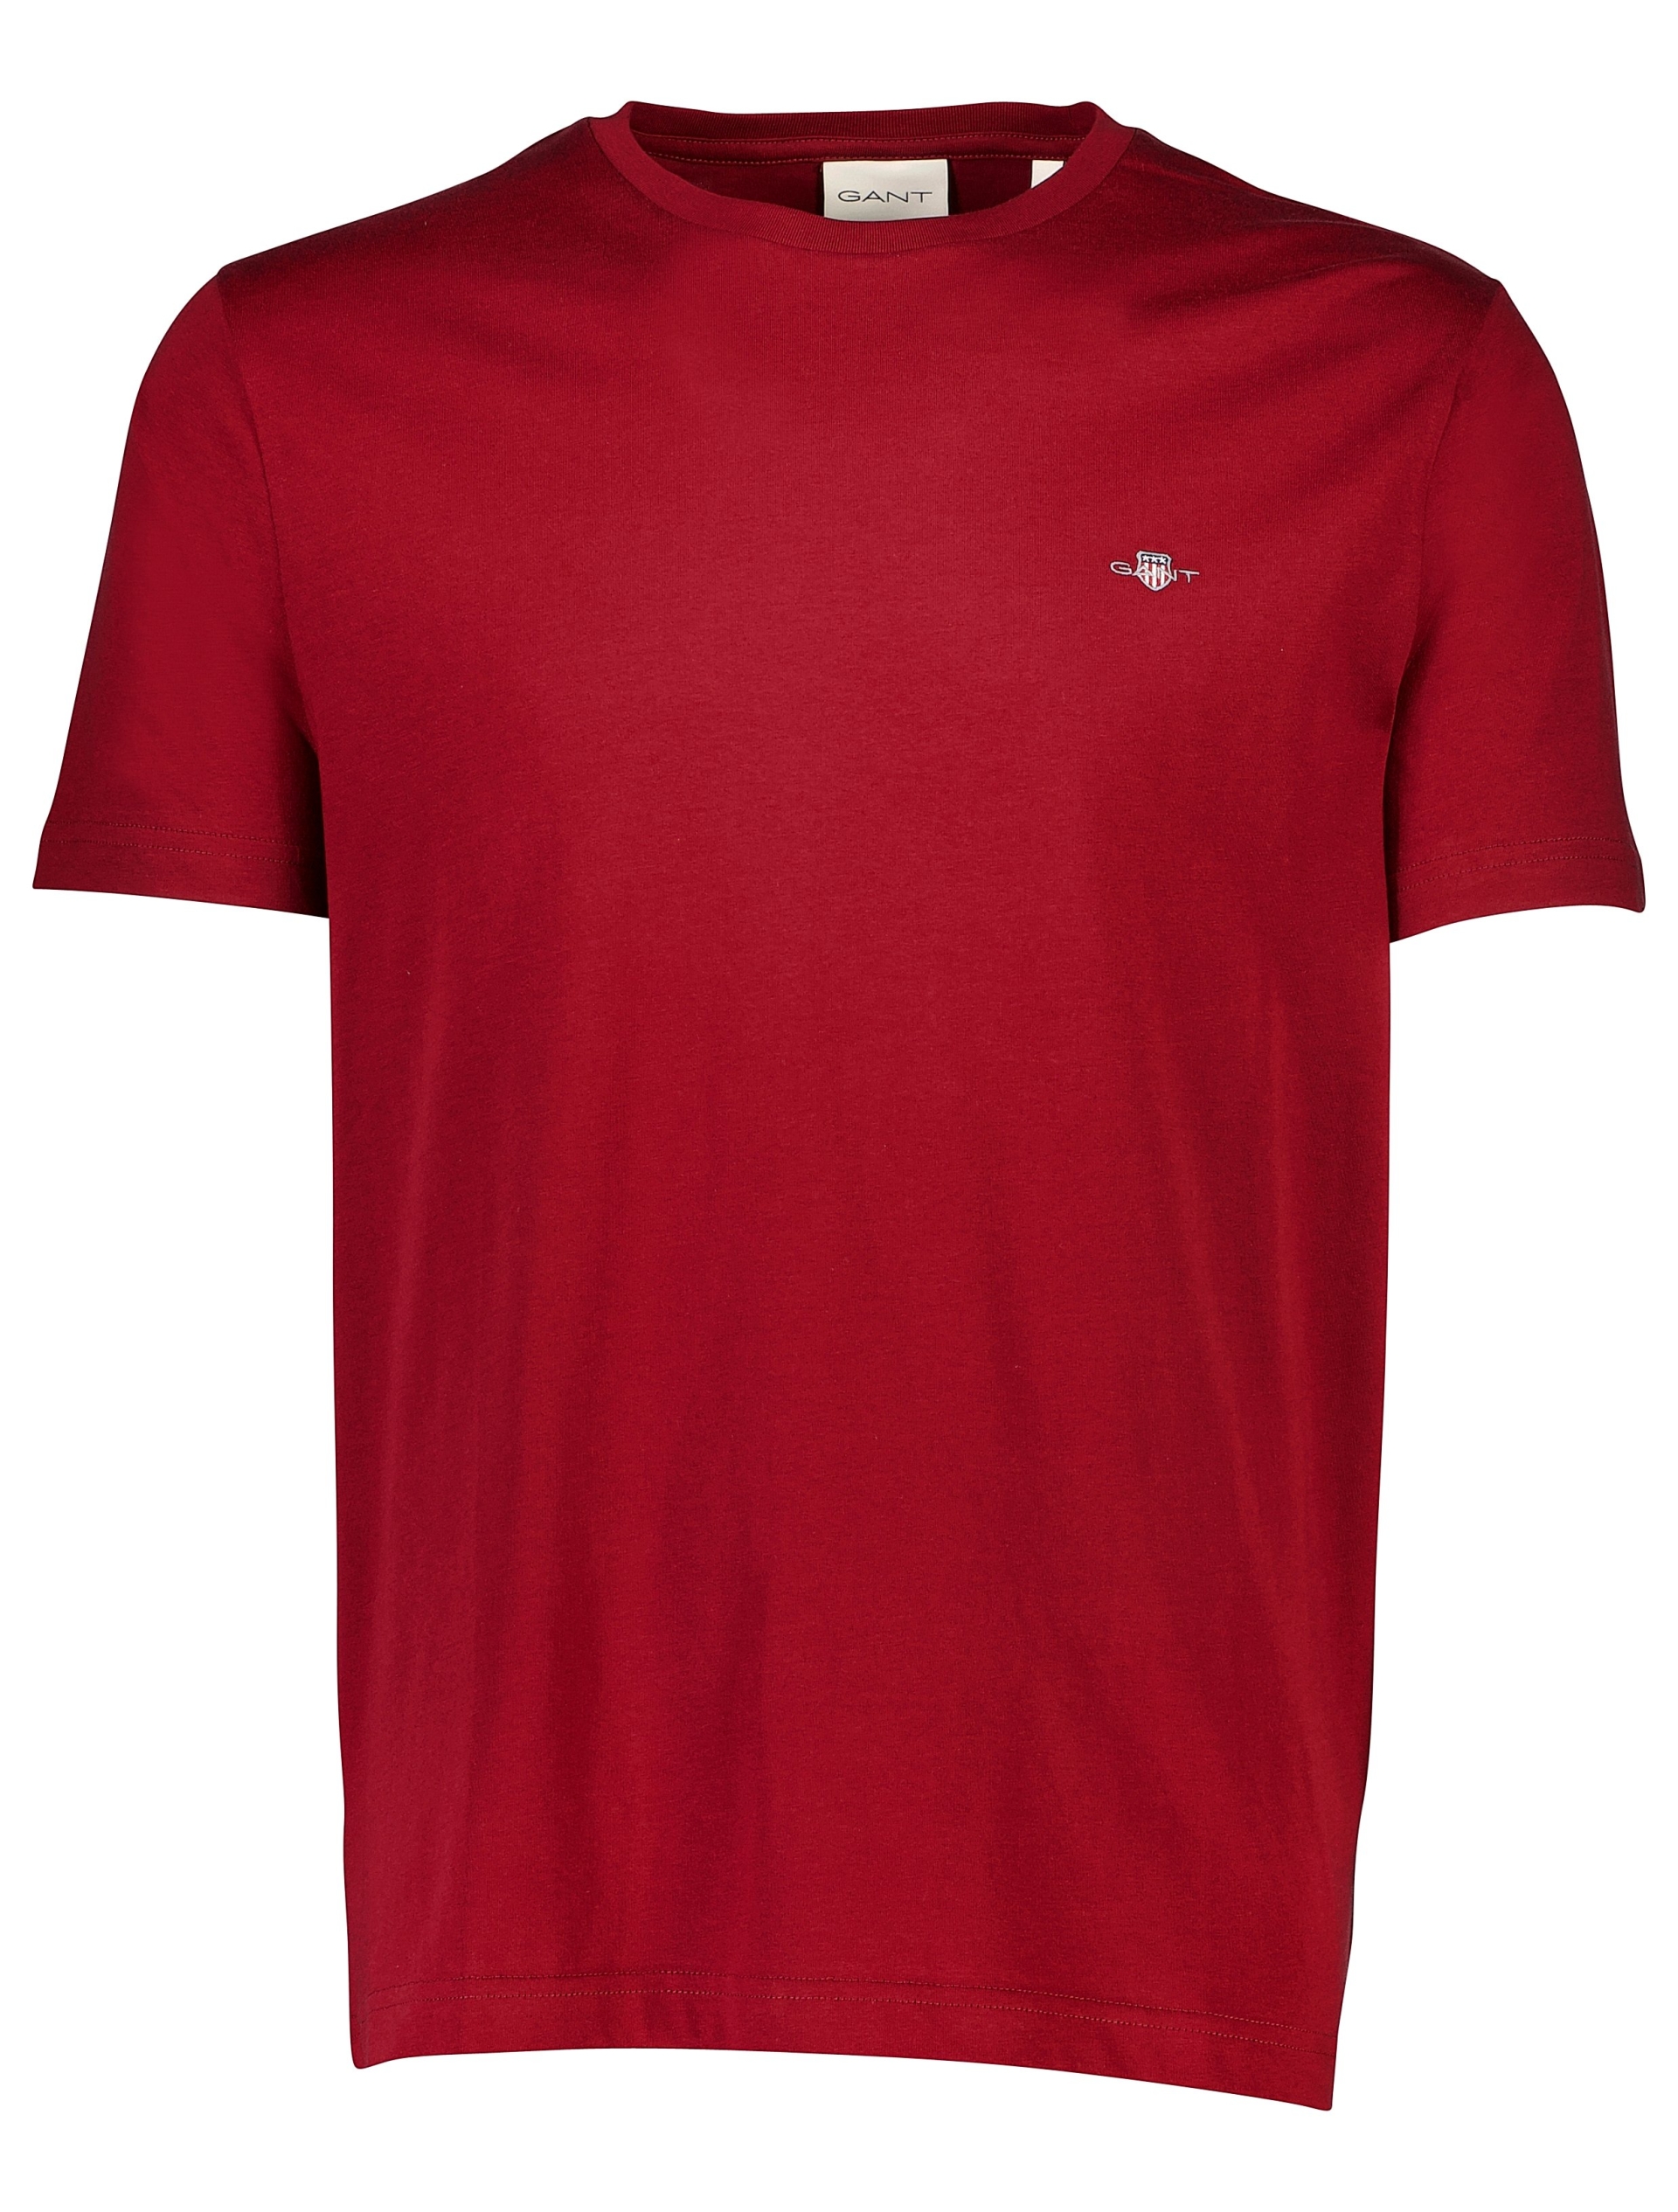 Gant T-shirt rød / 604 plumped red